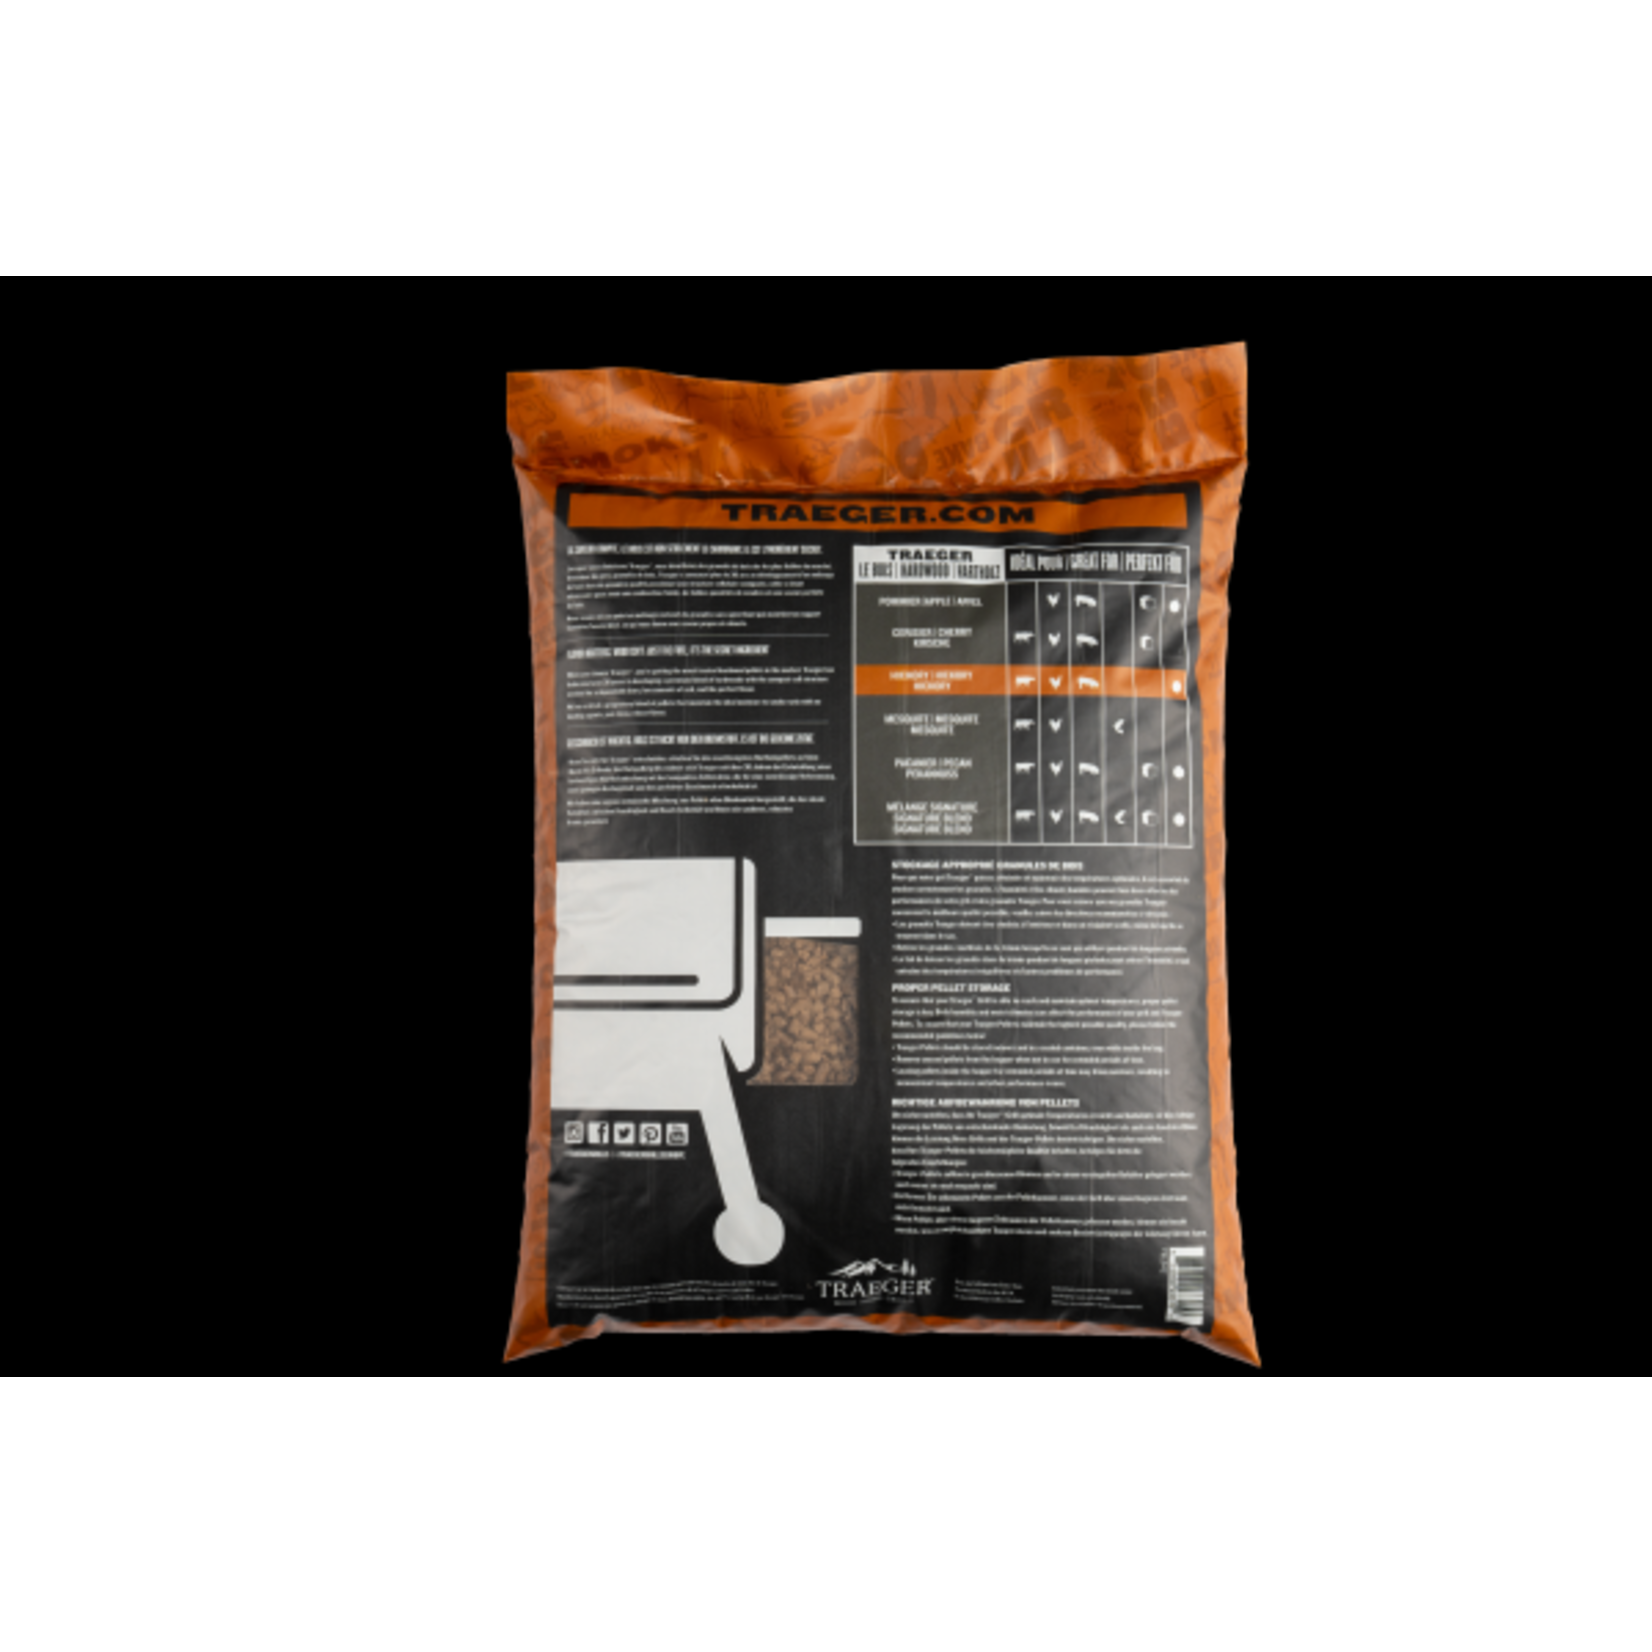 Traeger Multilingual - Hickory Pellets 9 kg Bag